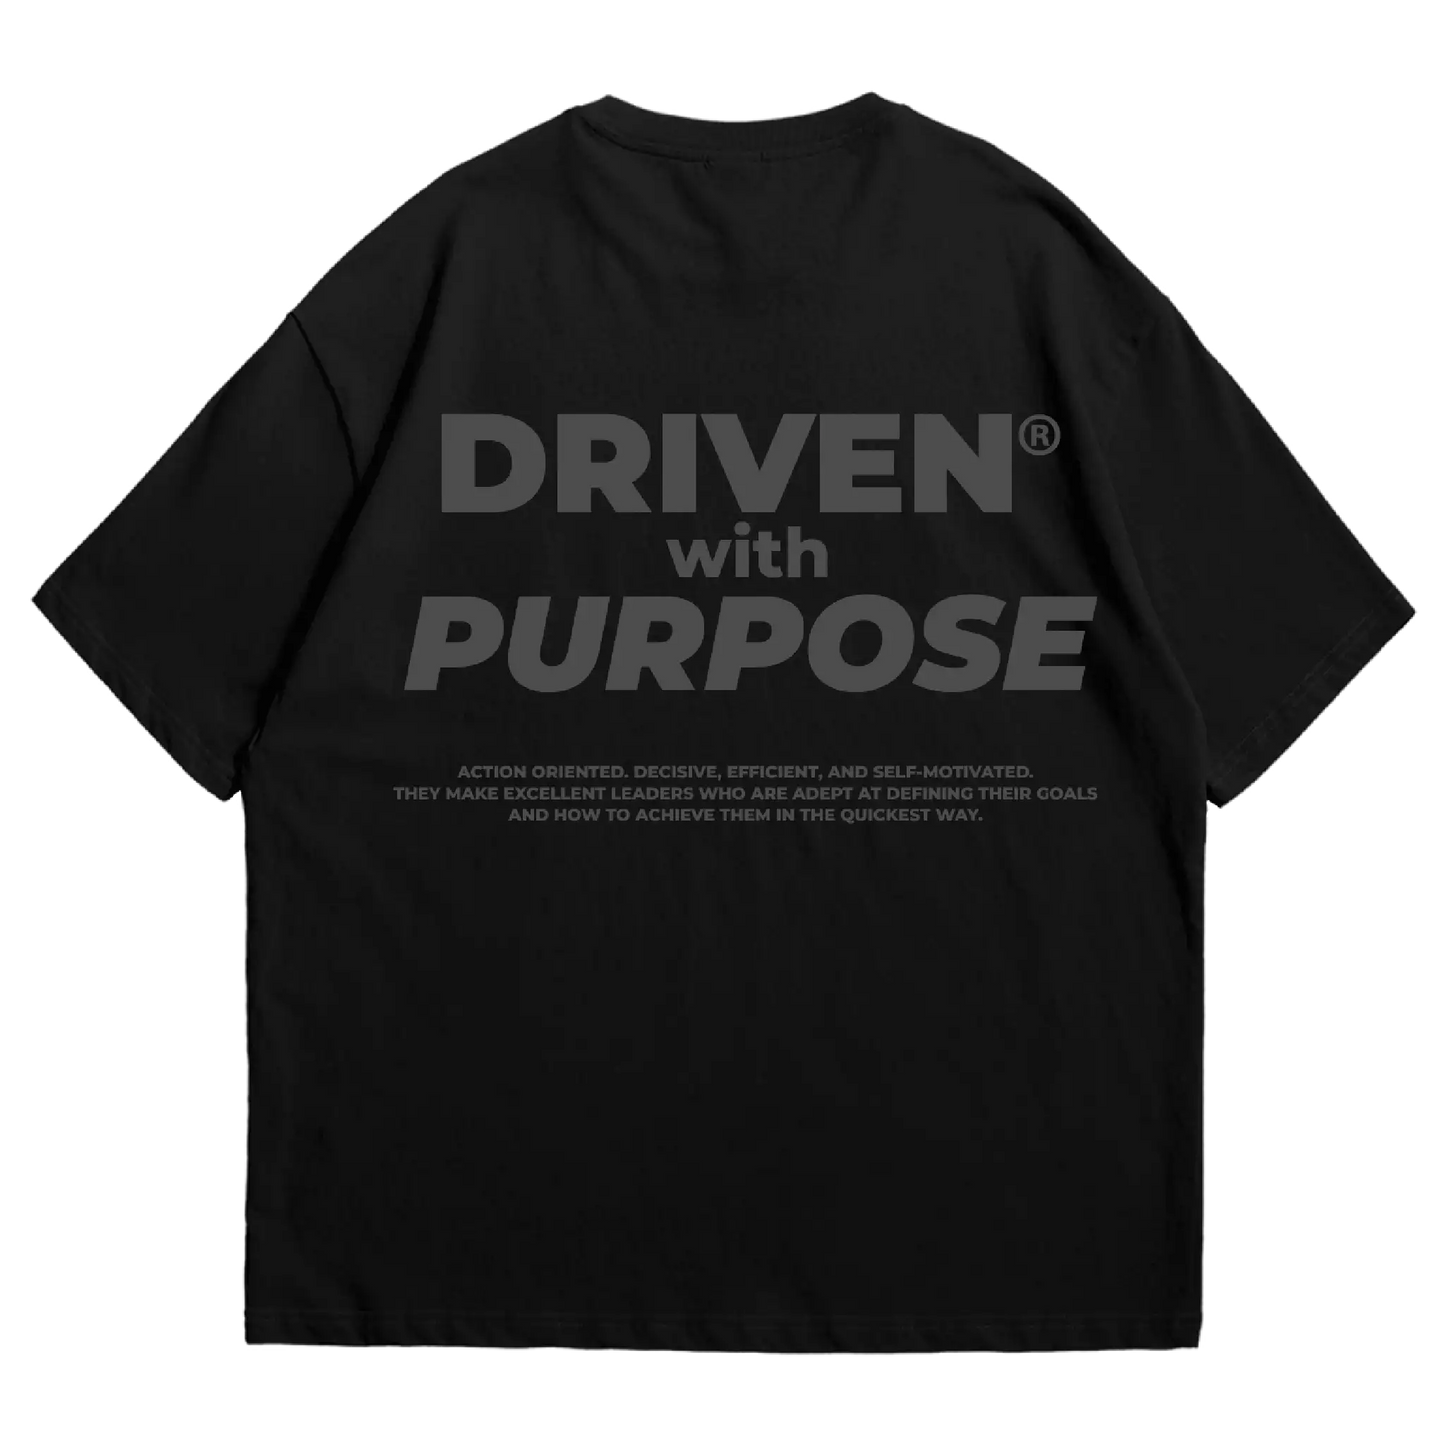 Purpose - Black on black